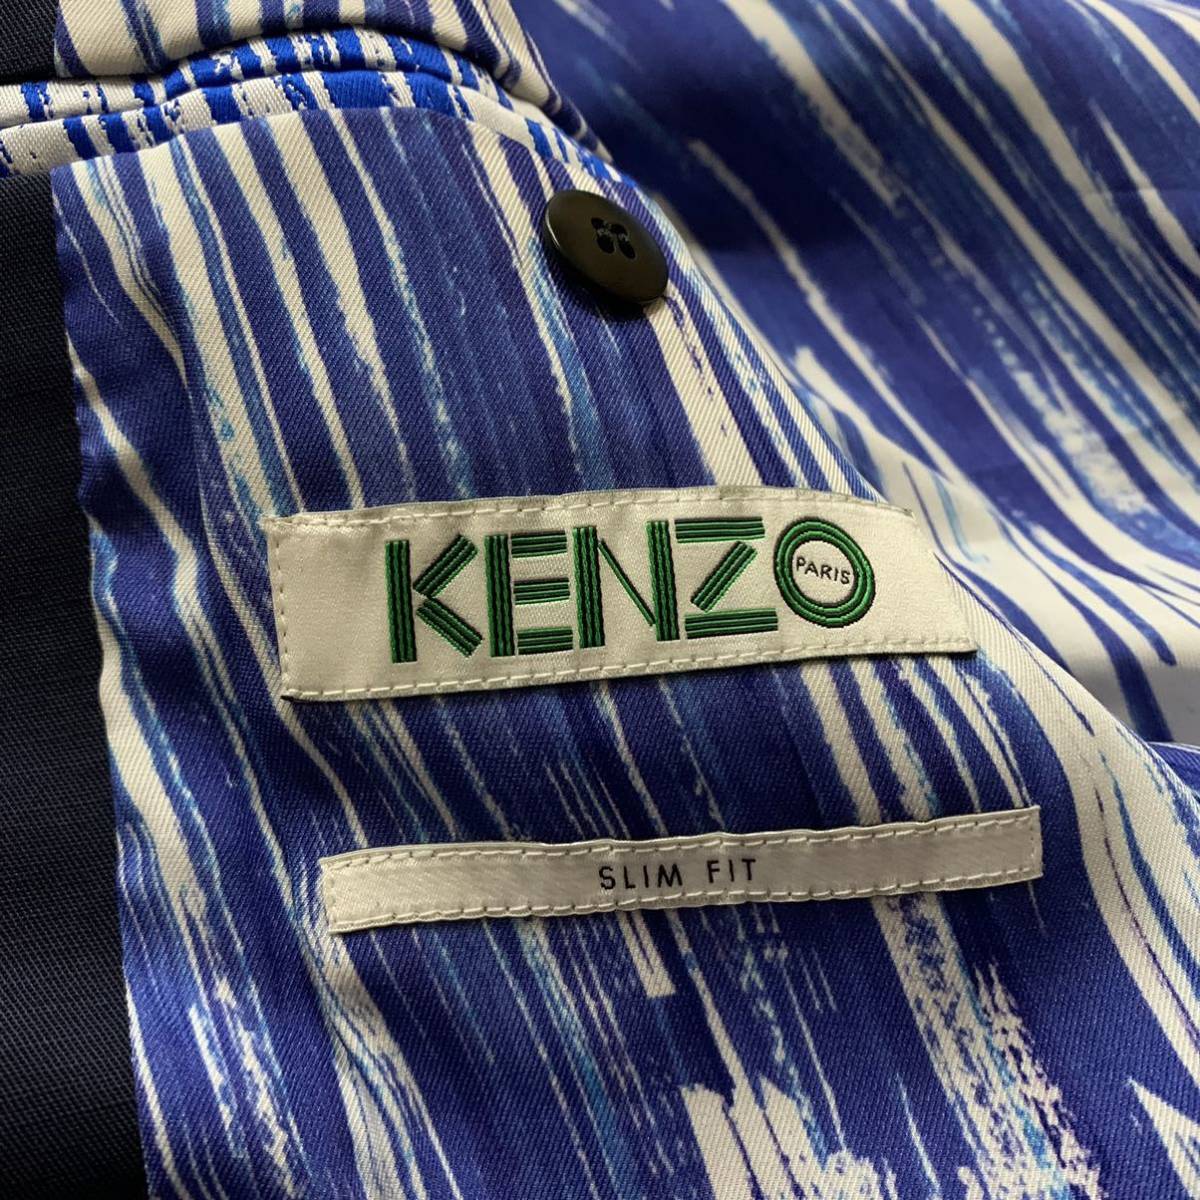 Y☆ 良品/ 高級ラグジュアリー服 [ジップ装飾デザイン] 'KENZO ケンゾー' SLIM FIT 3ボタン テーラードジャケット SIZE:46 アウター 紳士服_画像7